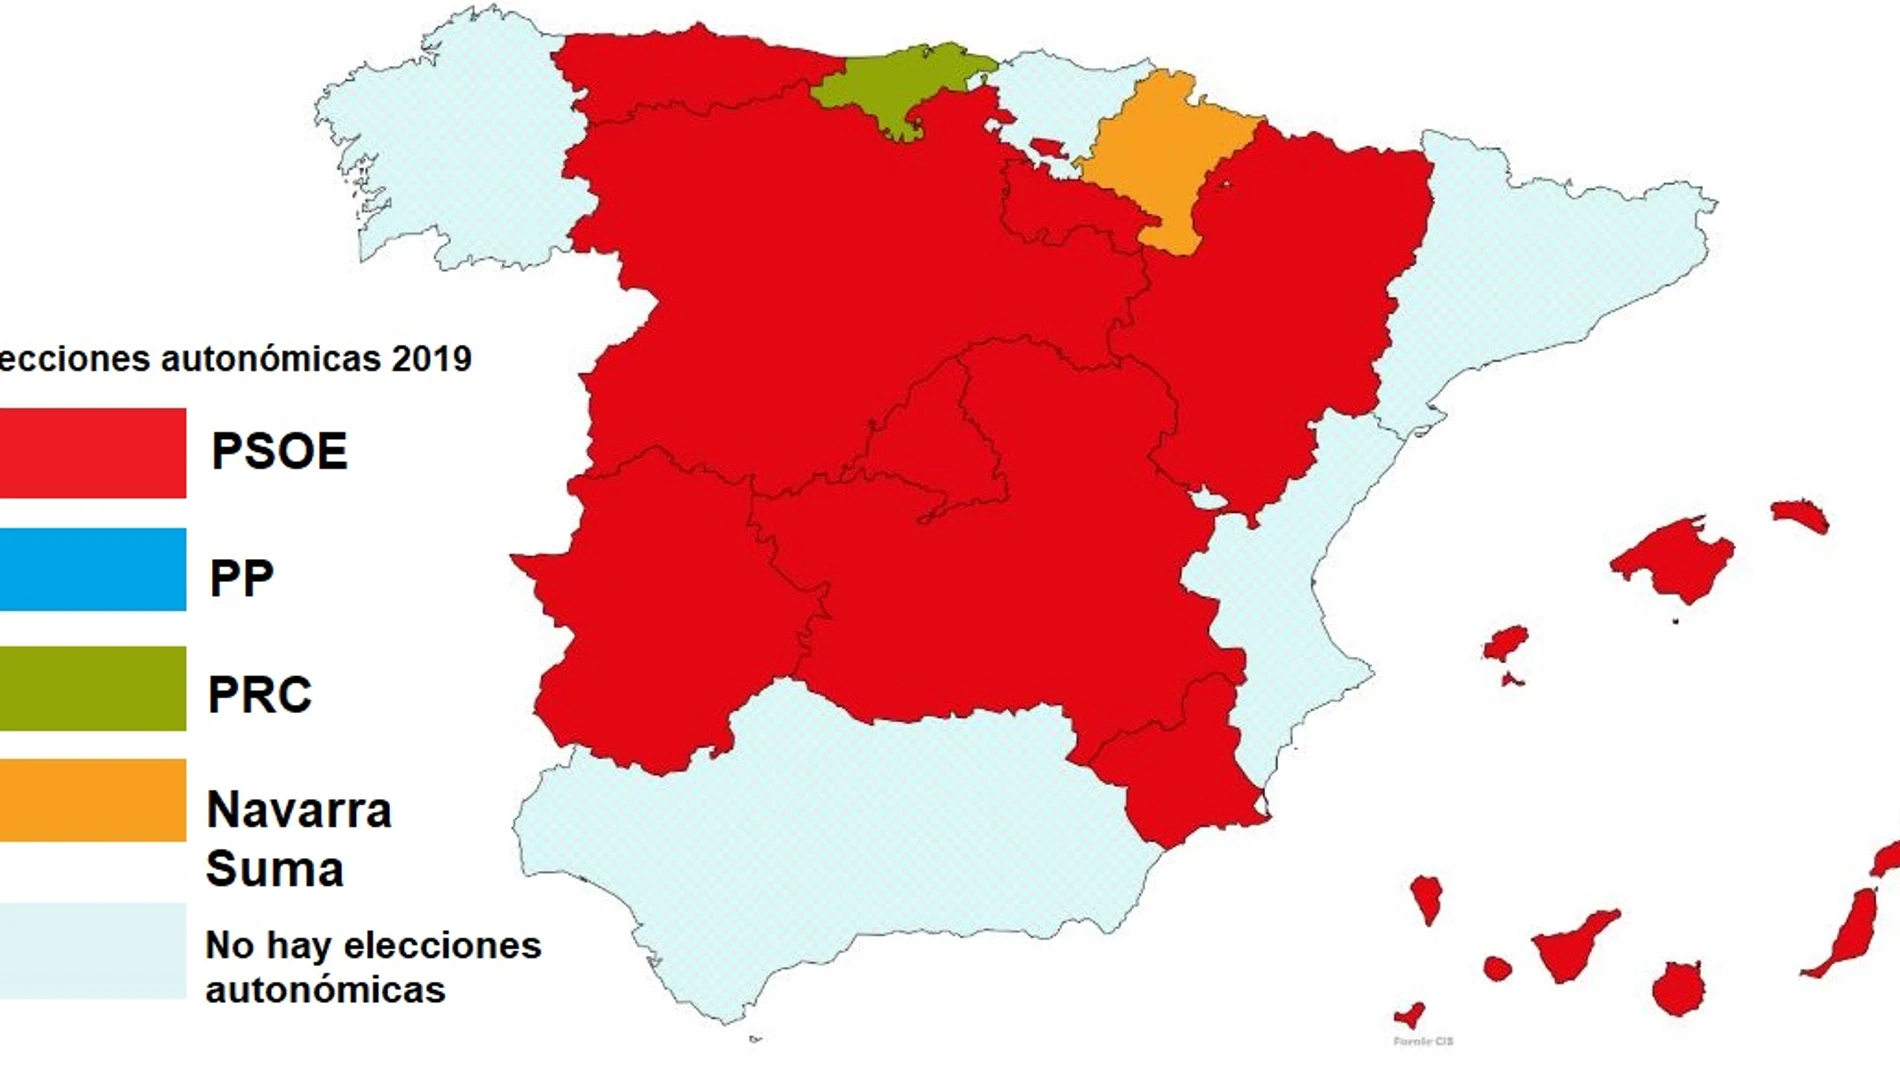 Barómetro del CIS: El PSOE arrasaría en todas las comunidades, salvo Cantabria y Navarra